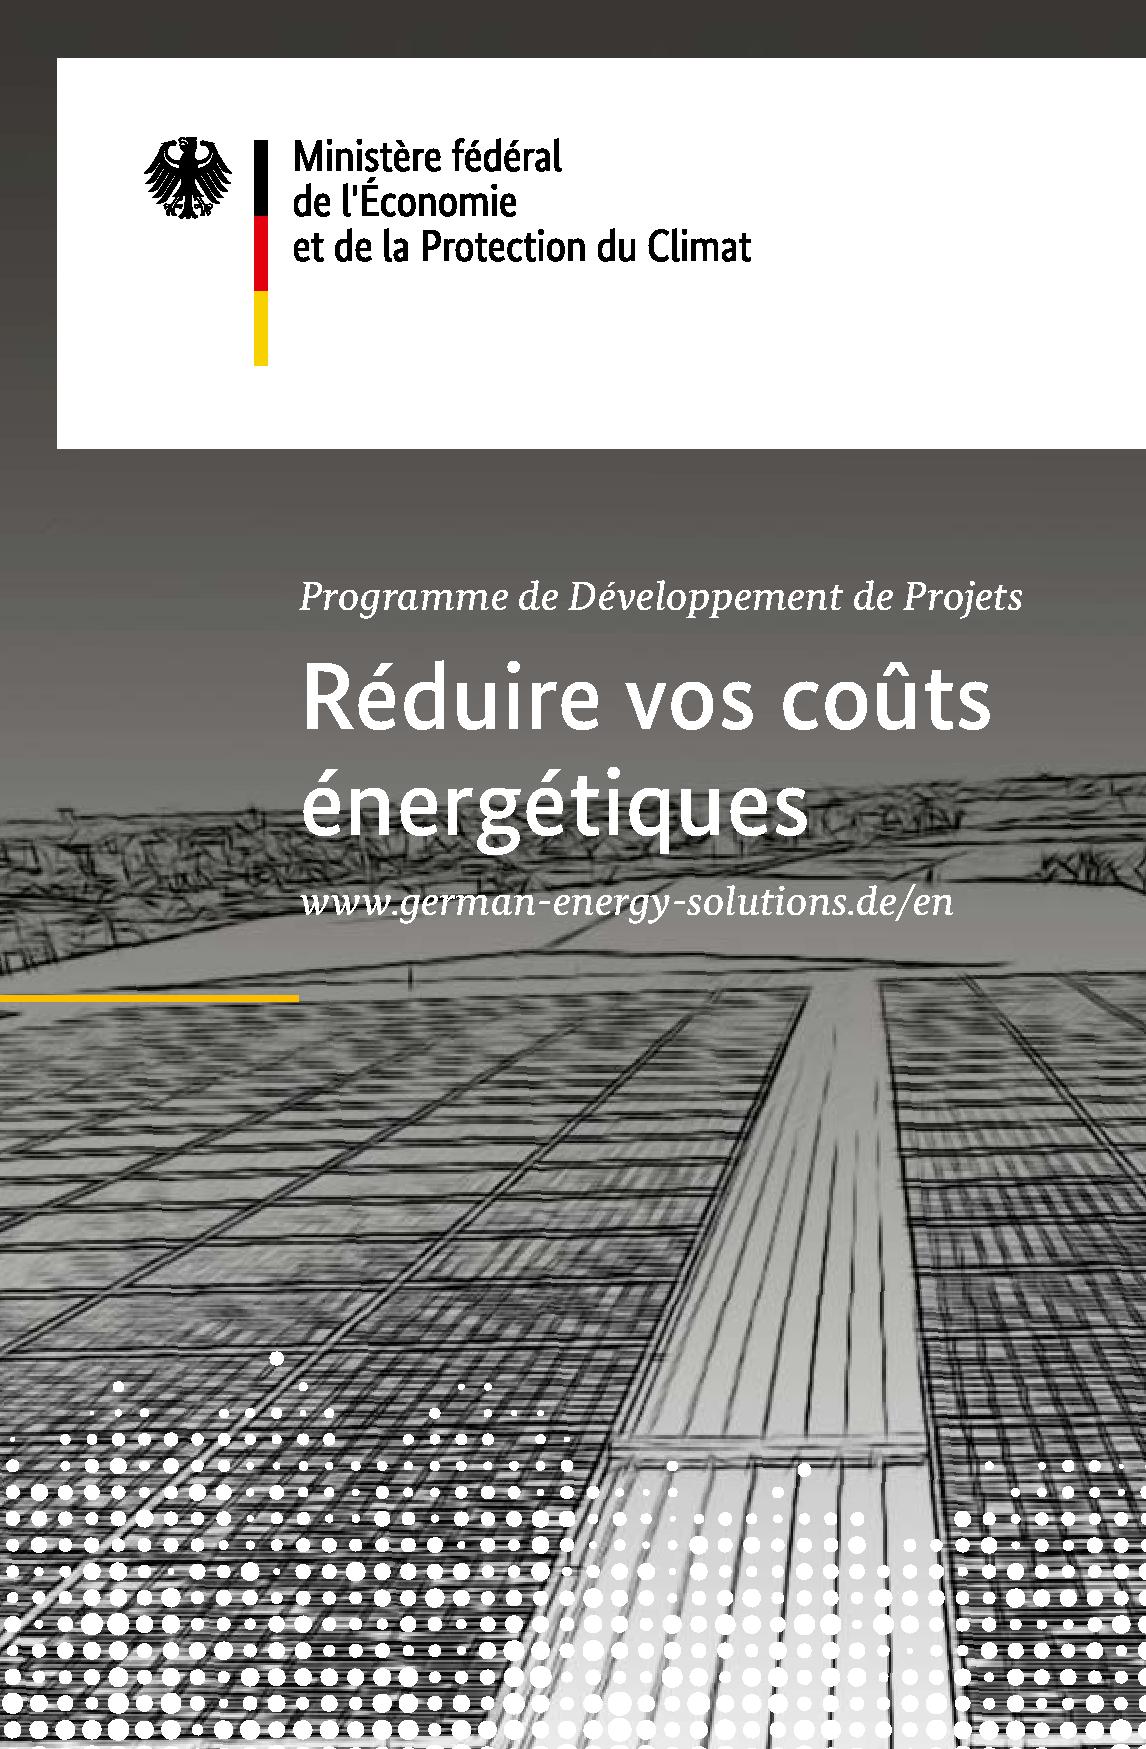 Programme de Développement de Projets